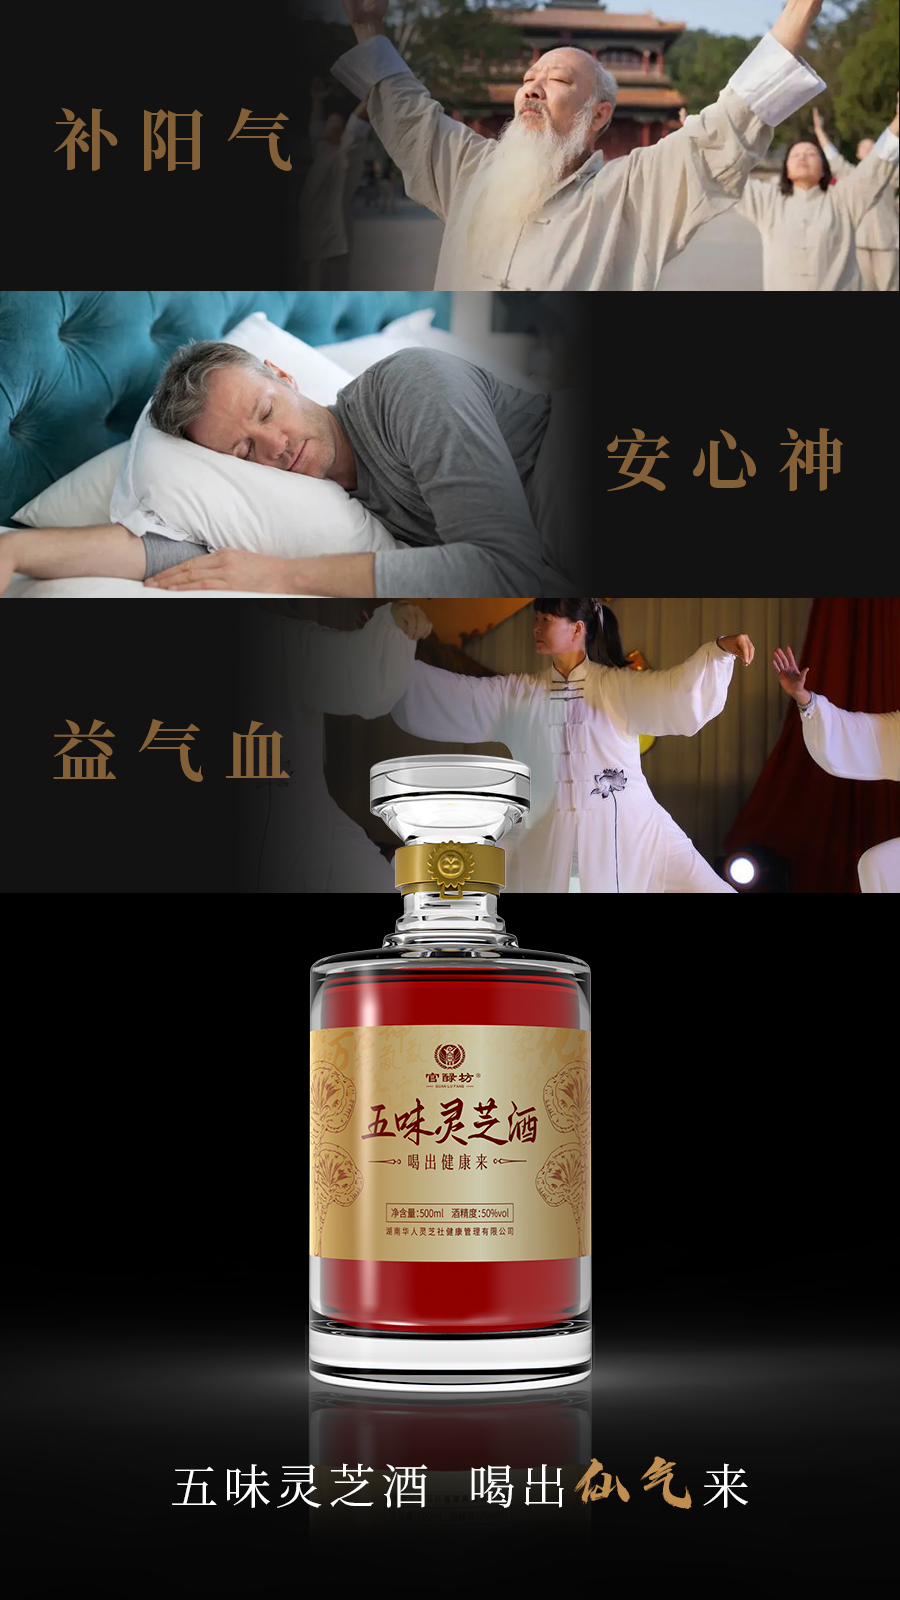 五味灵芝酒单独图片海报8.jpg